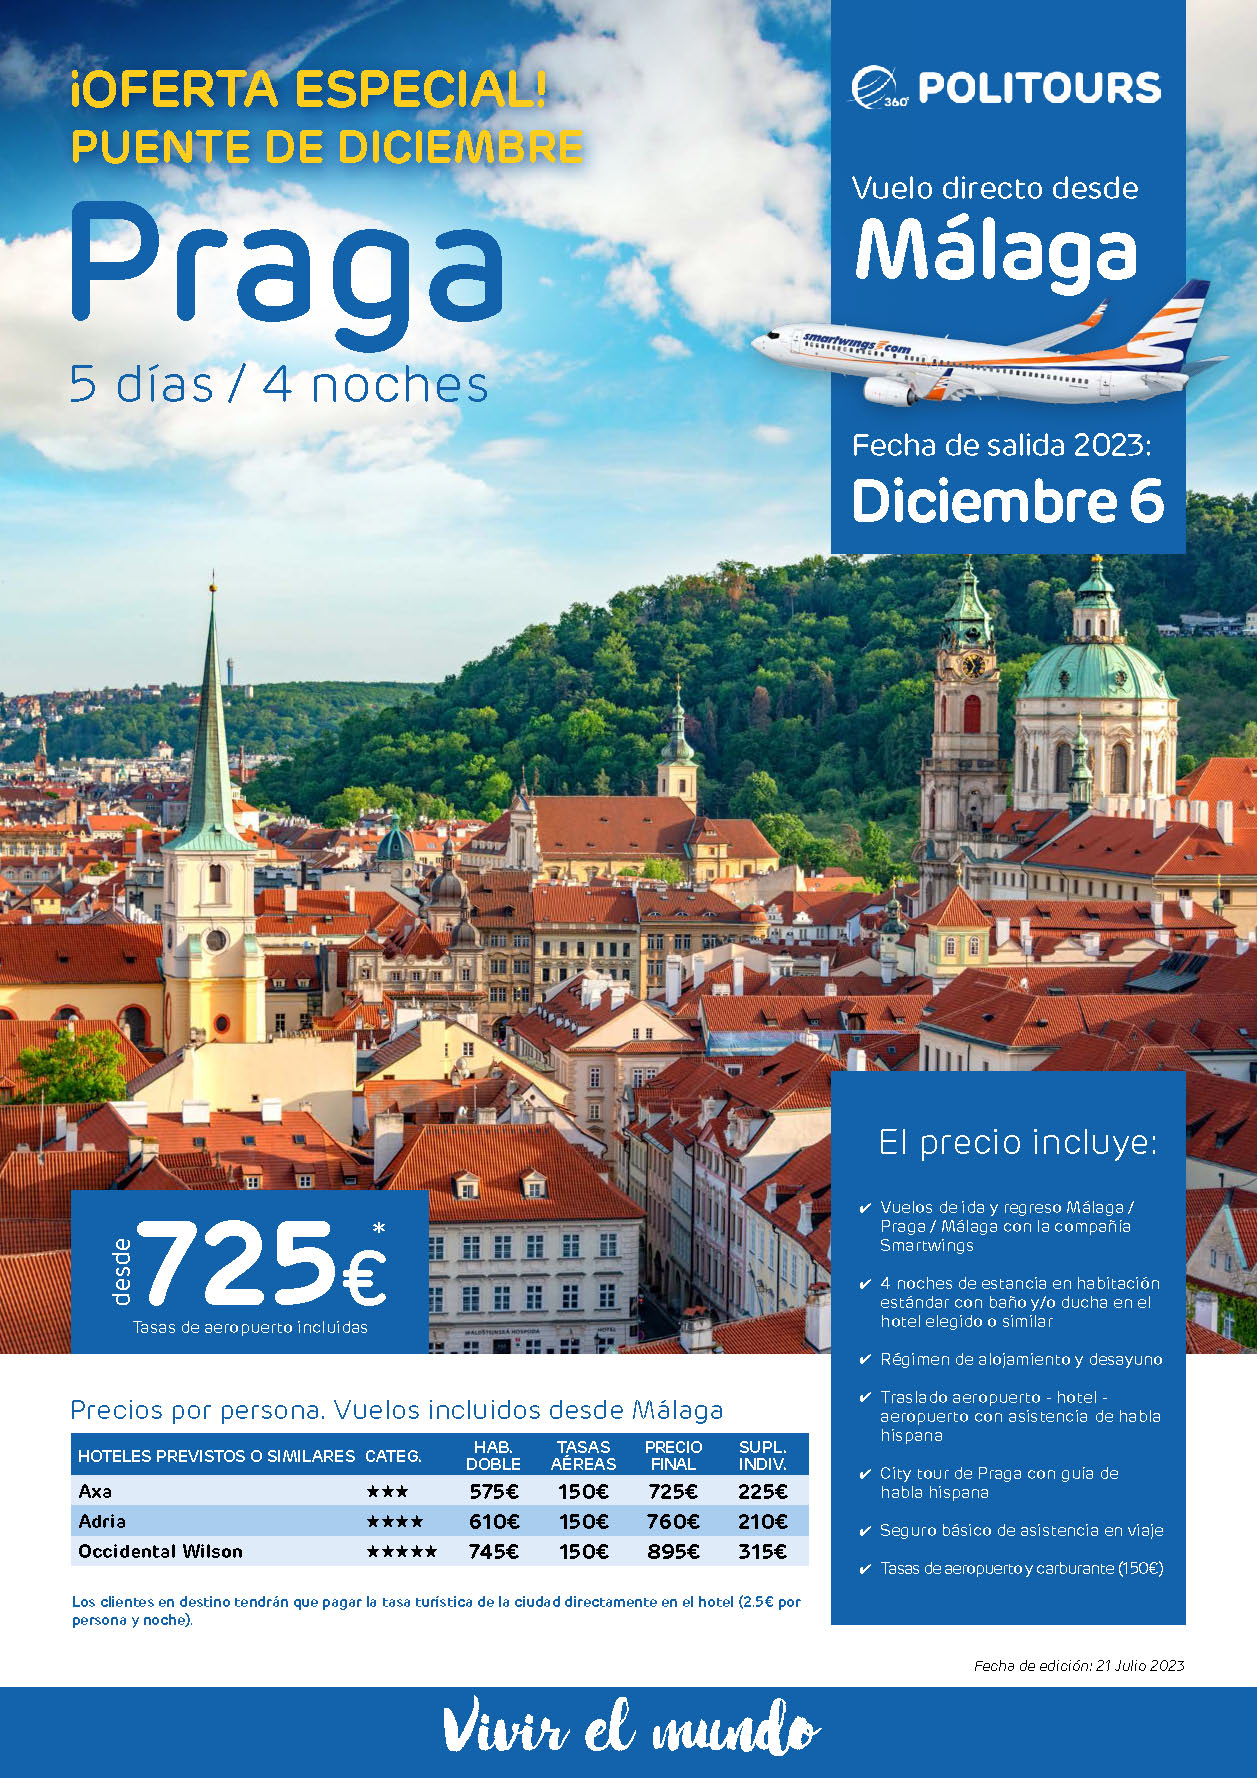 Oferta Politours Puente de Diciembre 2023 Estancia en Praga 5 dias salida 6 diciembre en vuelo directo desde Malaga